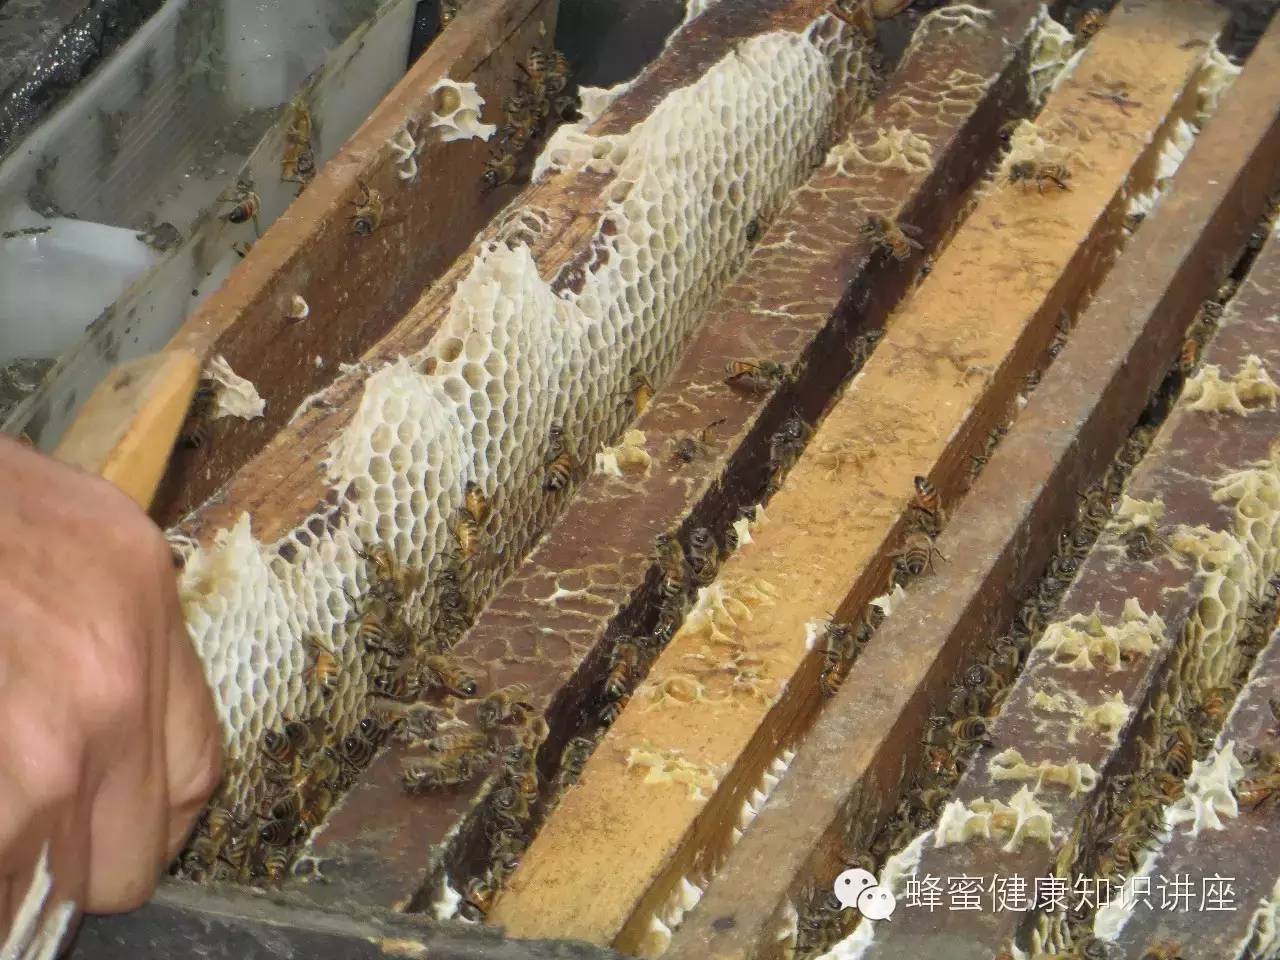 蜂蜜什么装 大枣蜂蜜水的功效 蜂蜜如何祛痘 上腭疼喉咙疼蜂蜜 制首乌加蜂蜜